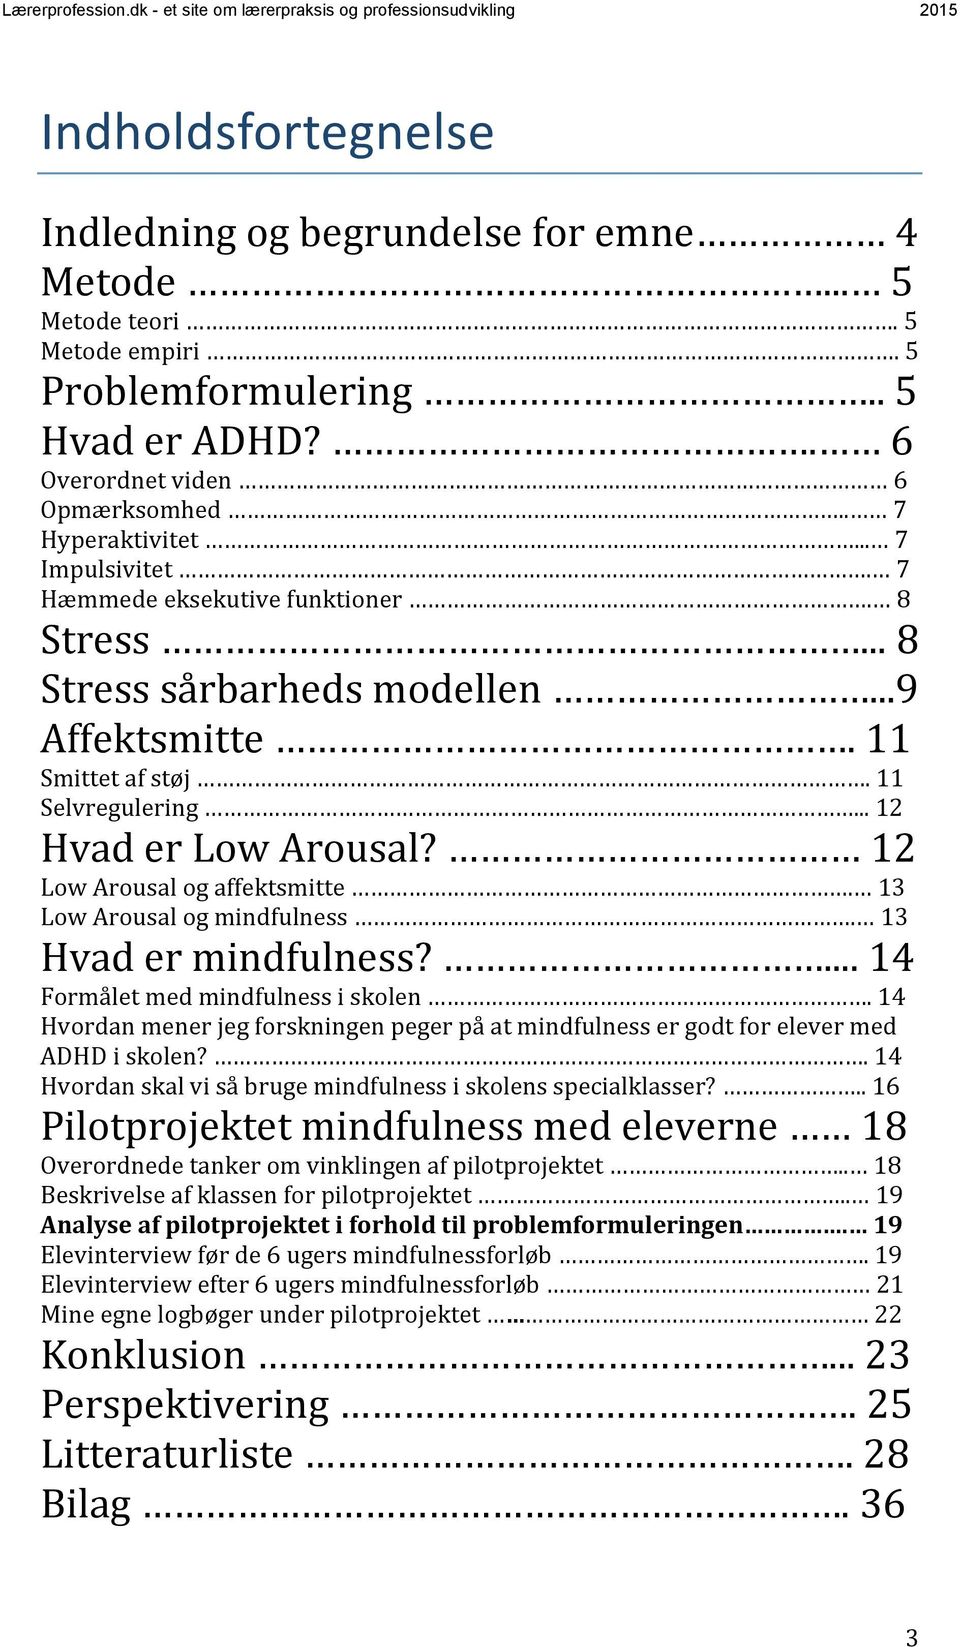 12 Low Arousal og affektsmitte. 13 Low Arousal og mindfulness. 13 Hvad er mindfulness?... 14 Formålet med mindfulness i skolen.